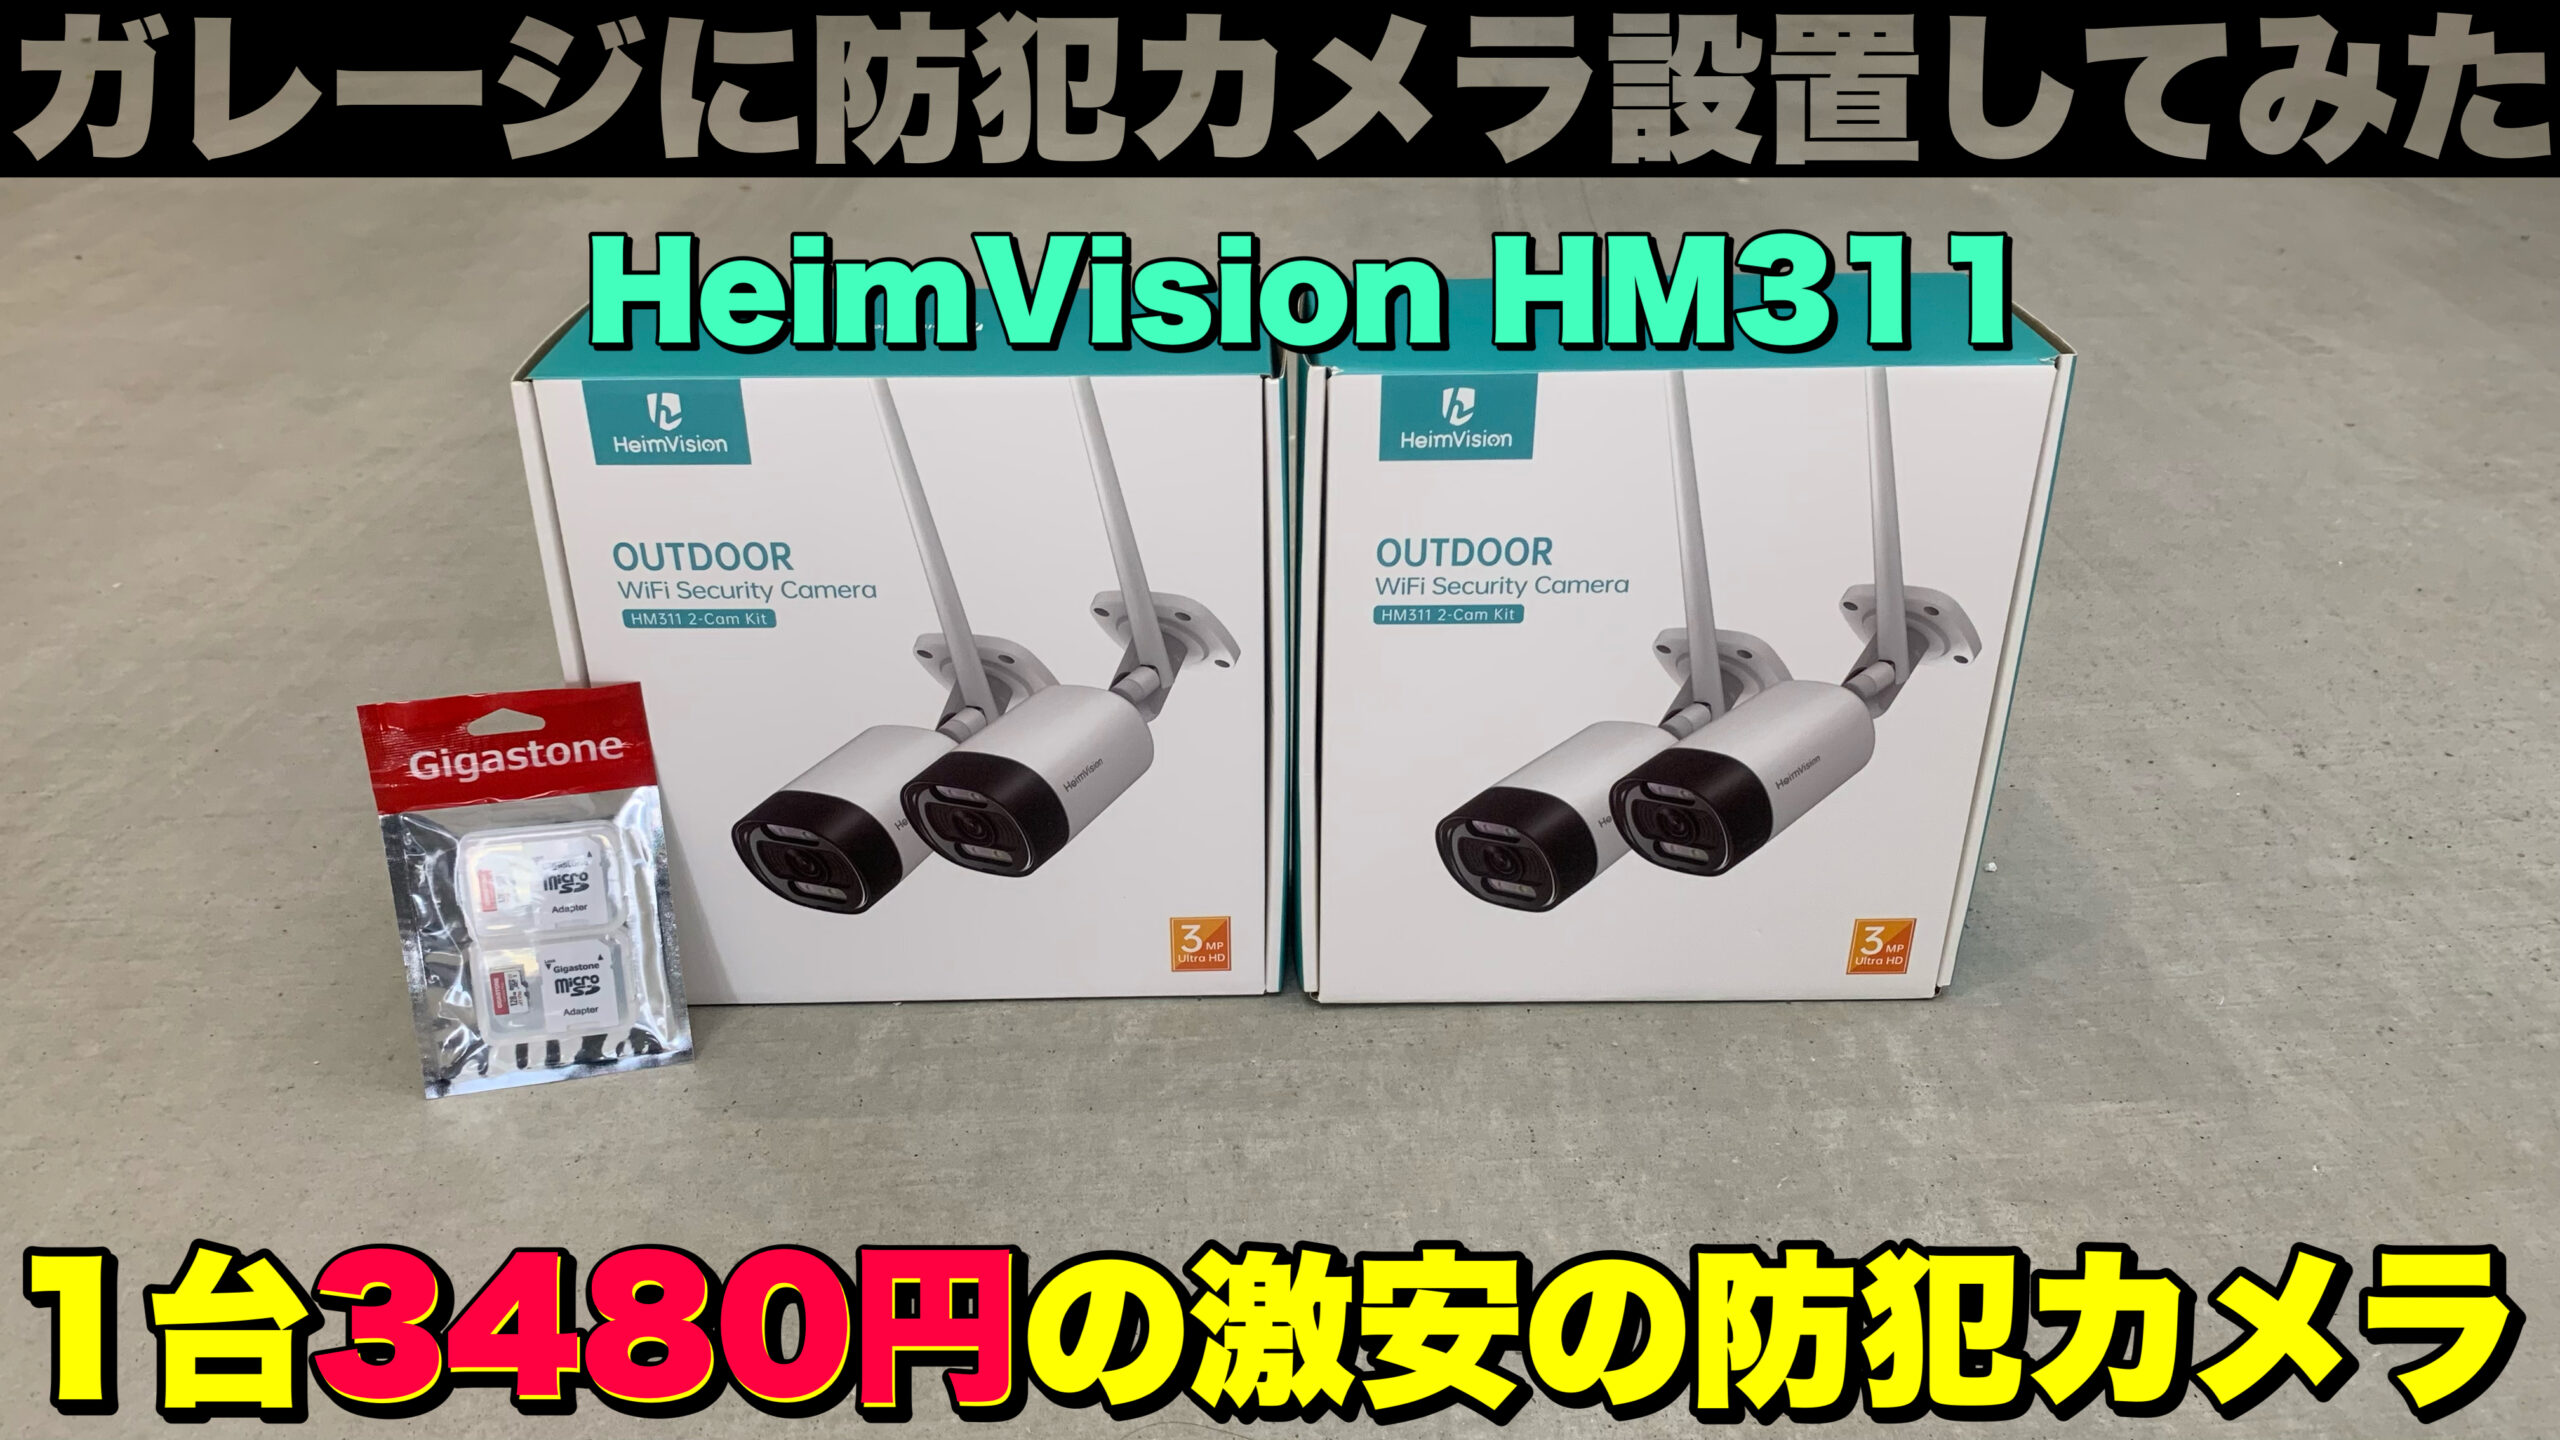 HeimVision HM311】1台3480円のダミーカメラのような価格の防犯カメラ 